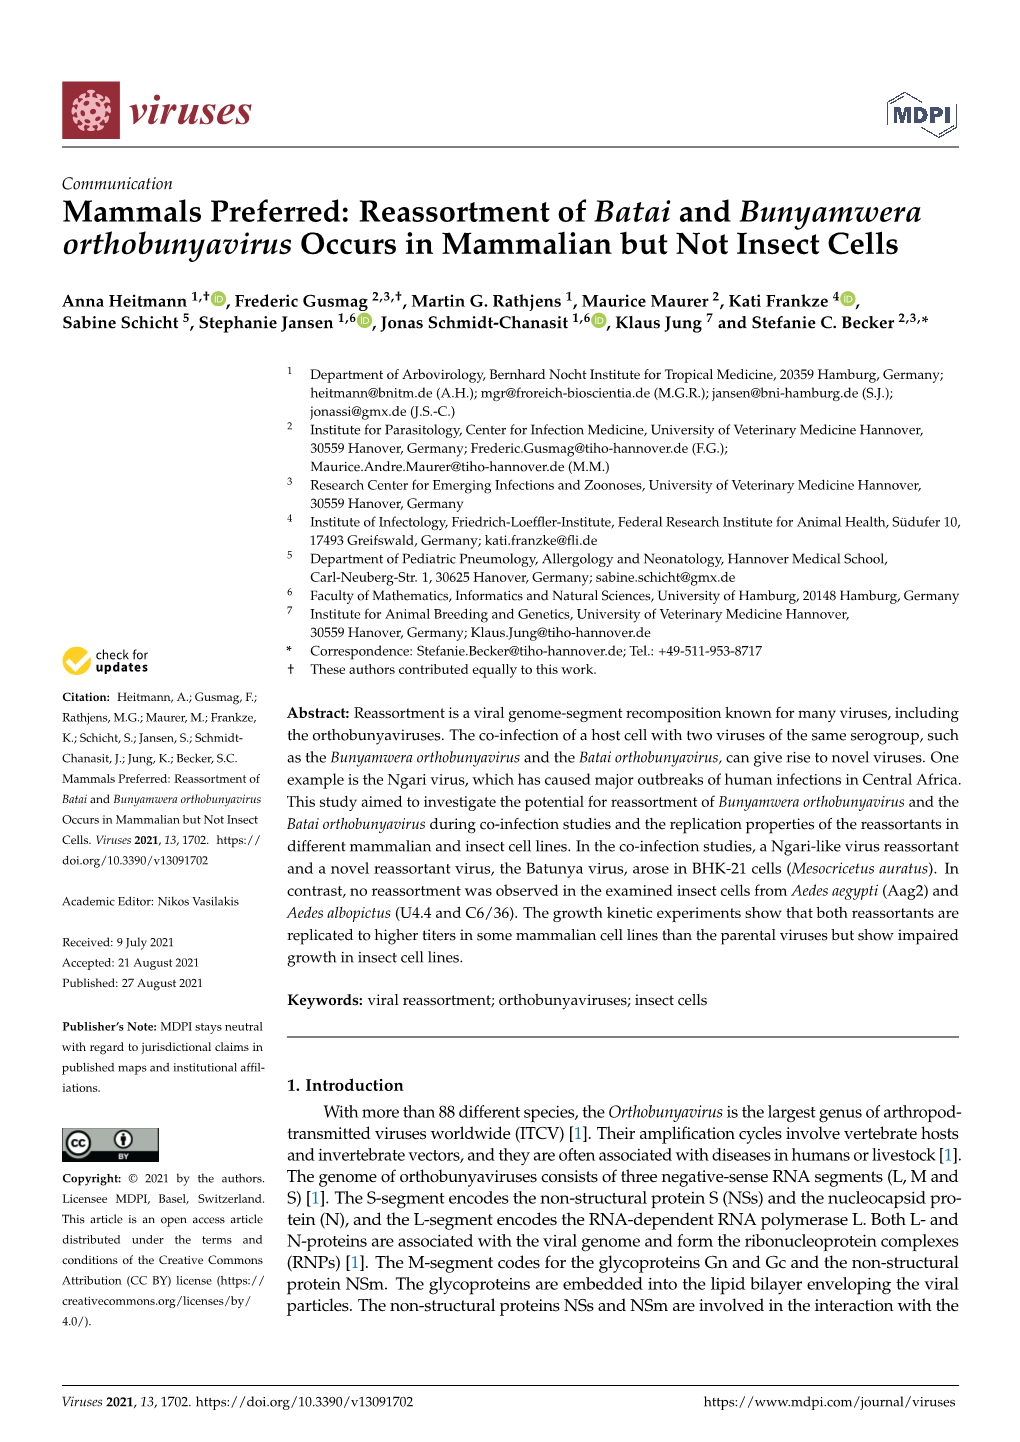 Reassortment of Batai and Bunyamwera Orthobunyavirus Occurs in Mammalian but Not Insect Cells